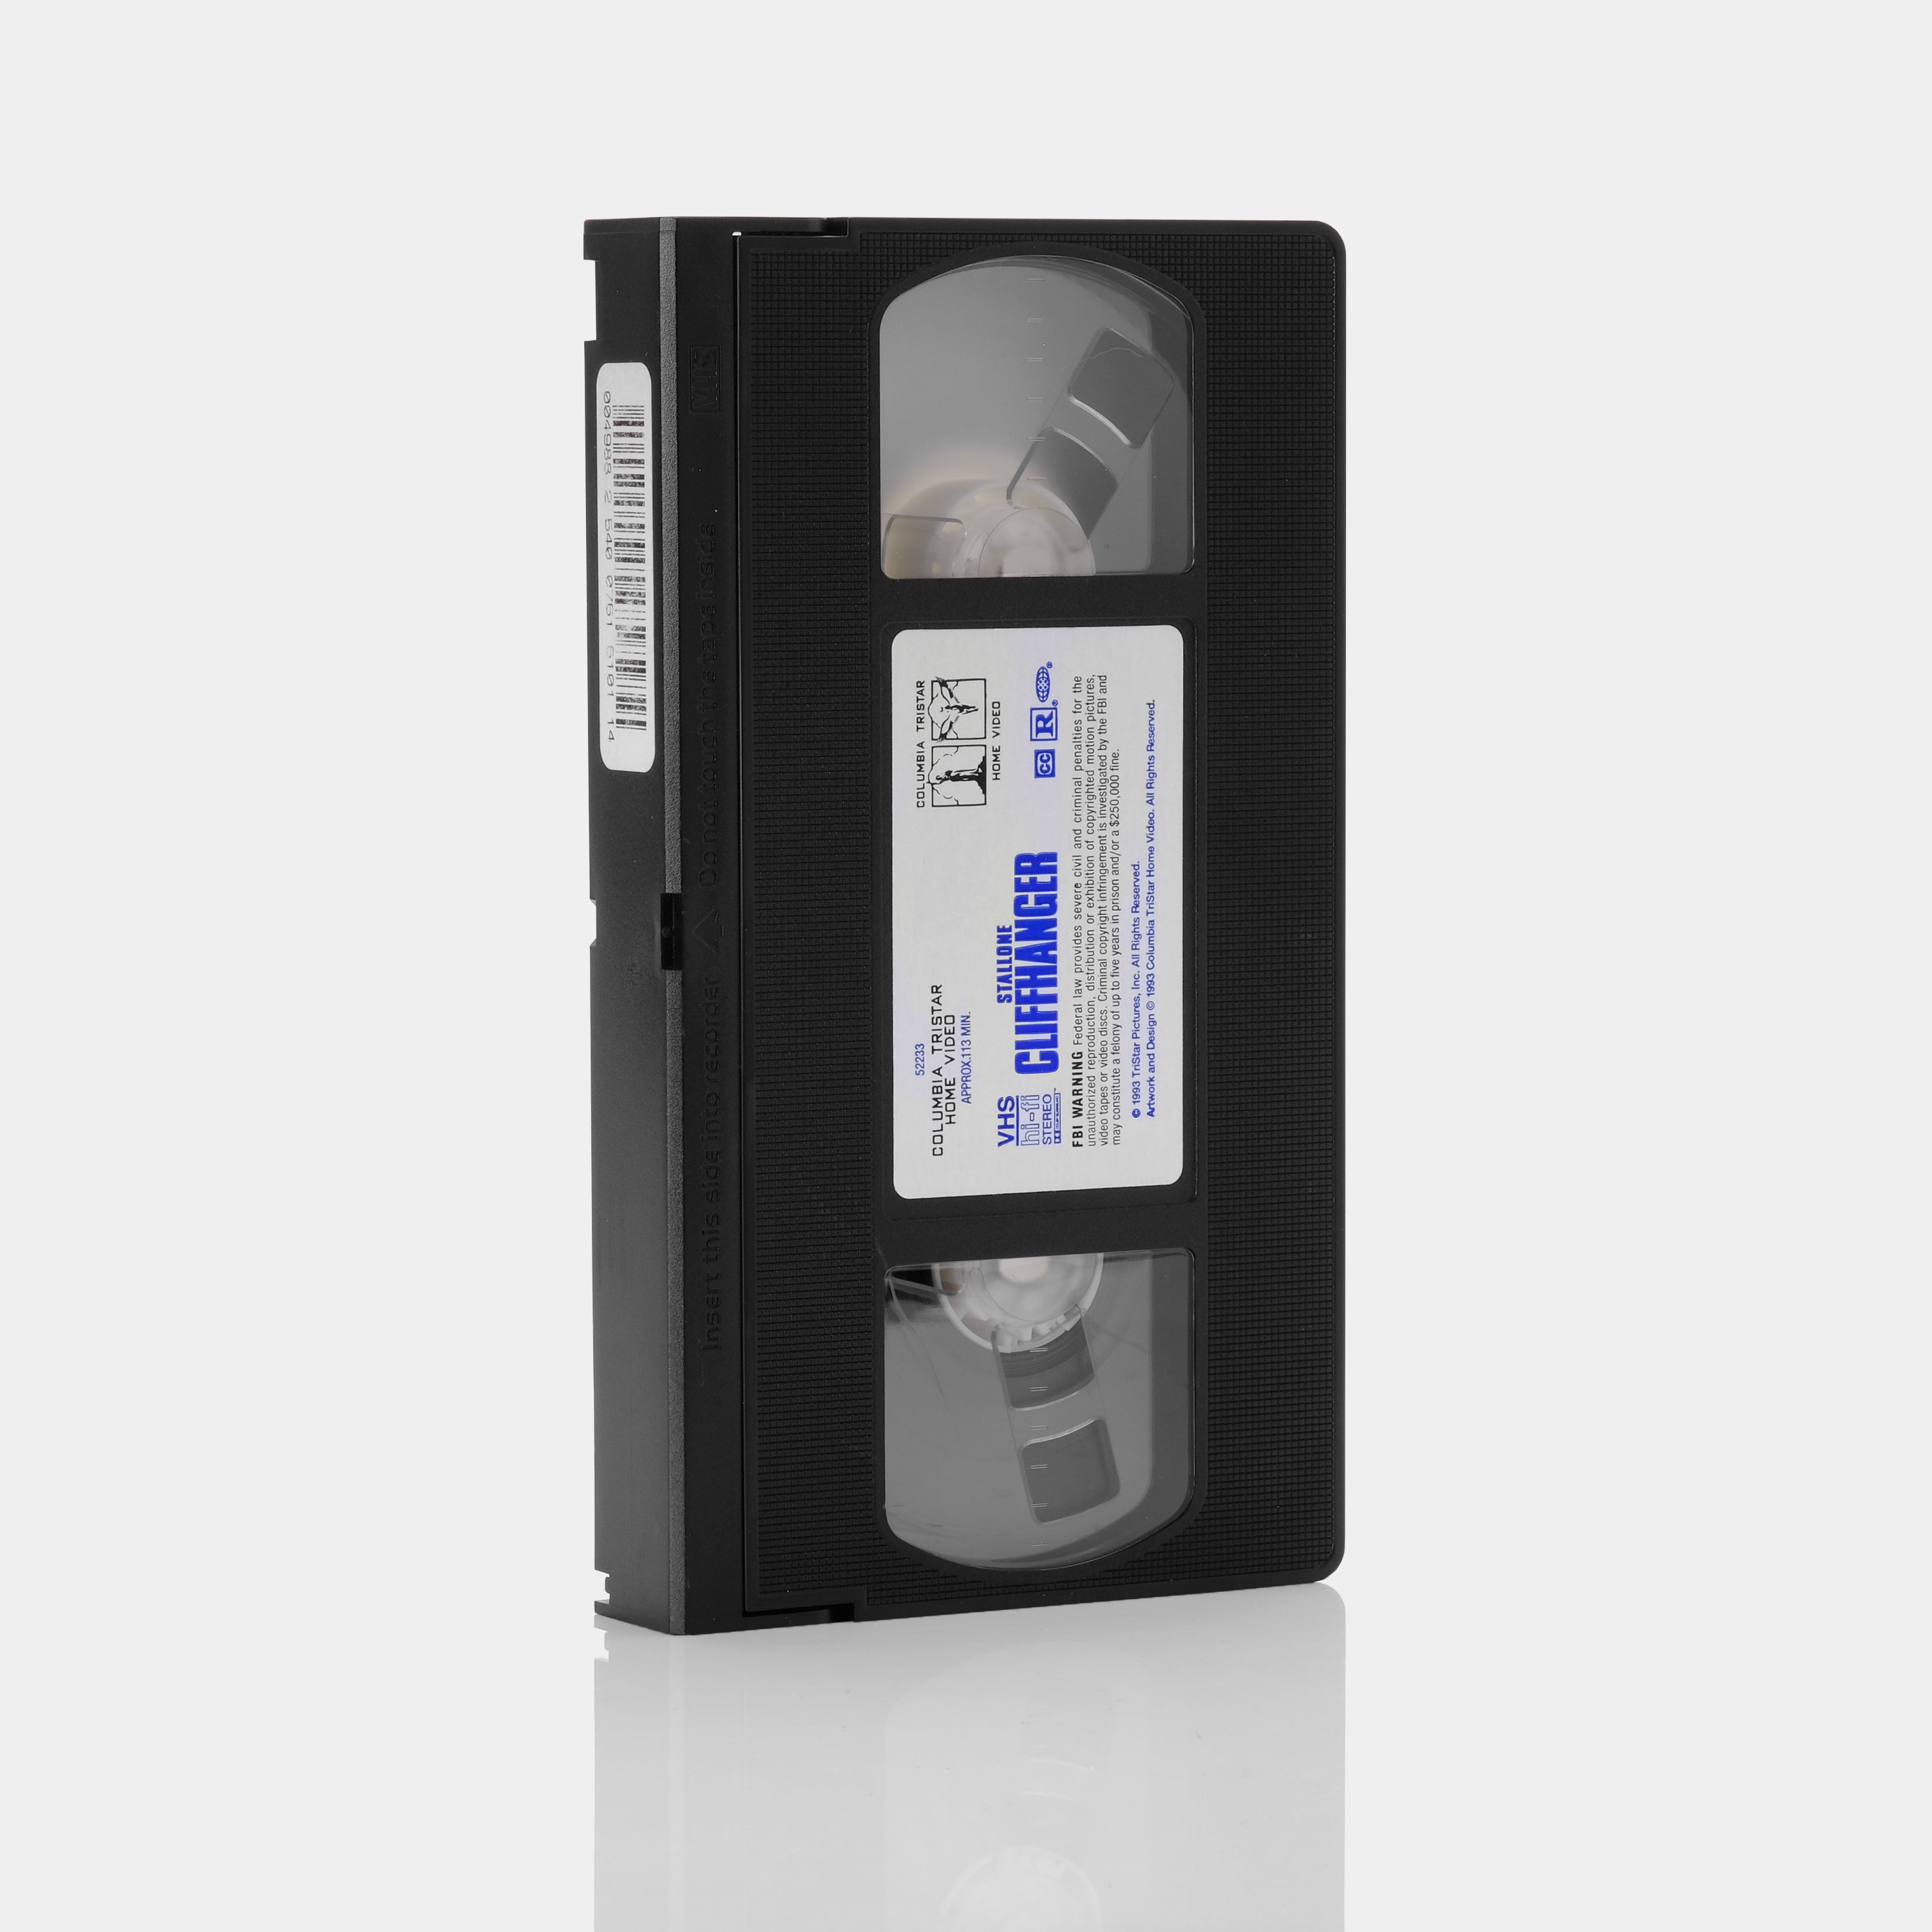 Cliffhanger VHS Tape